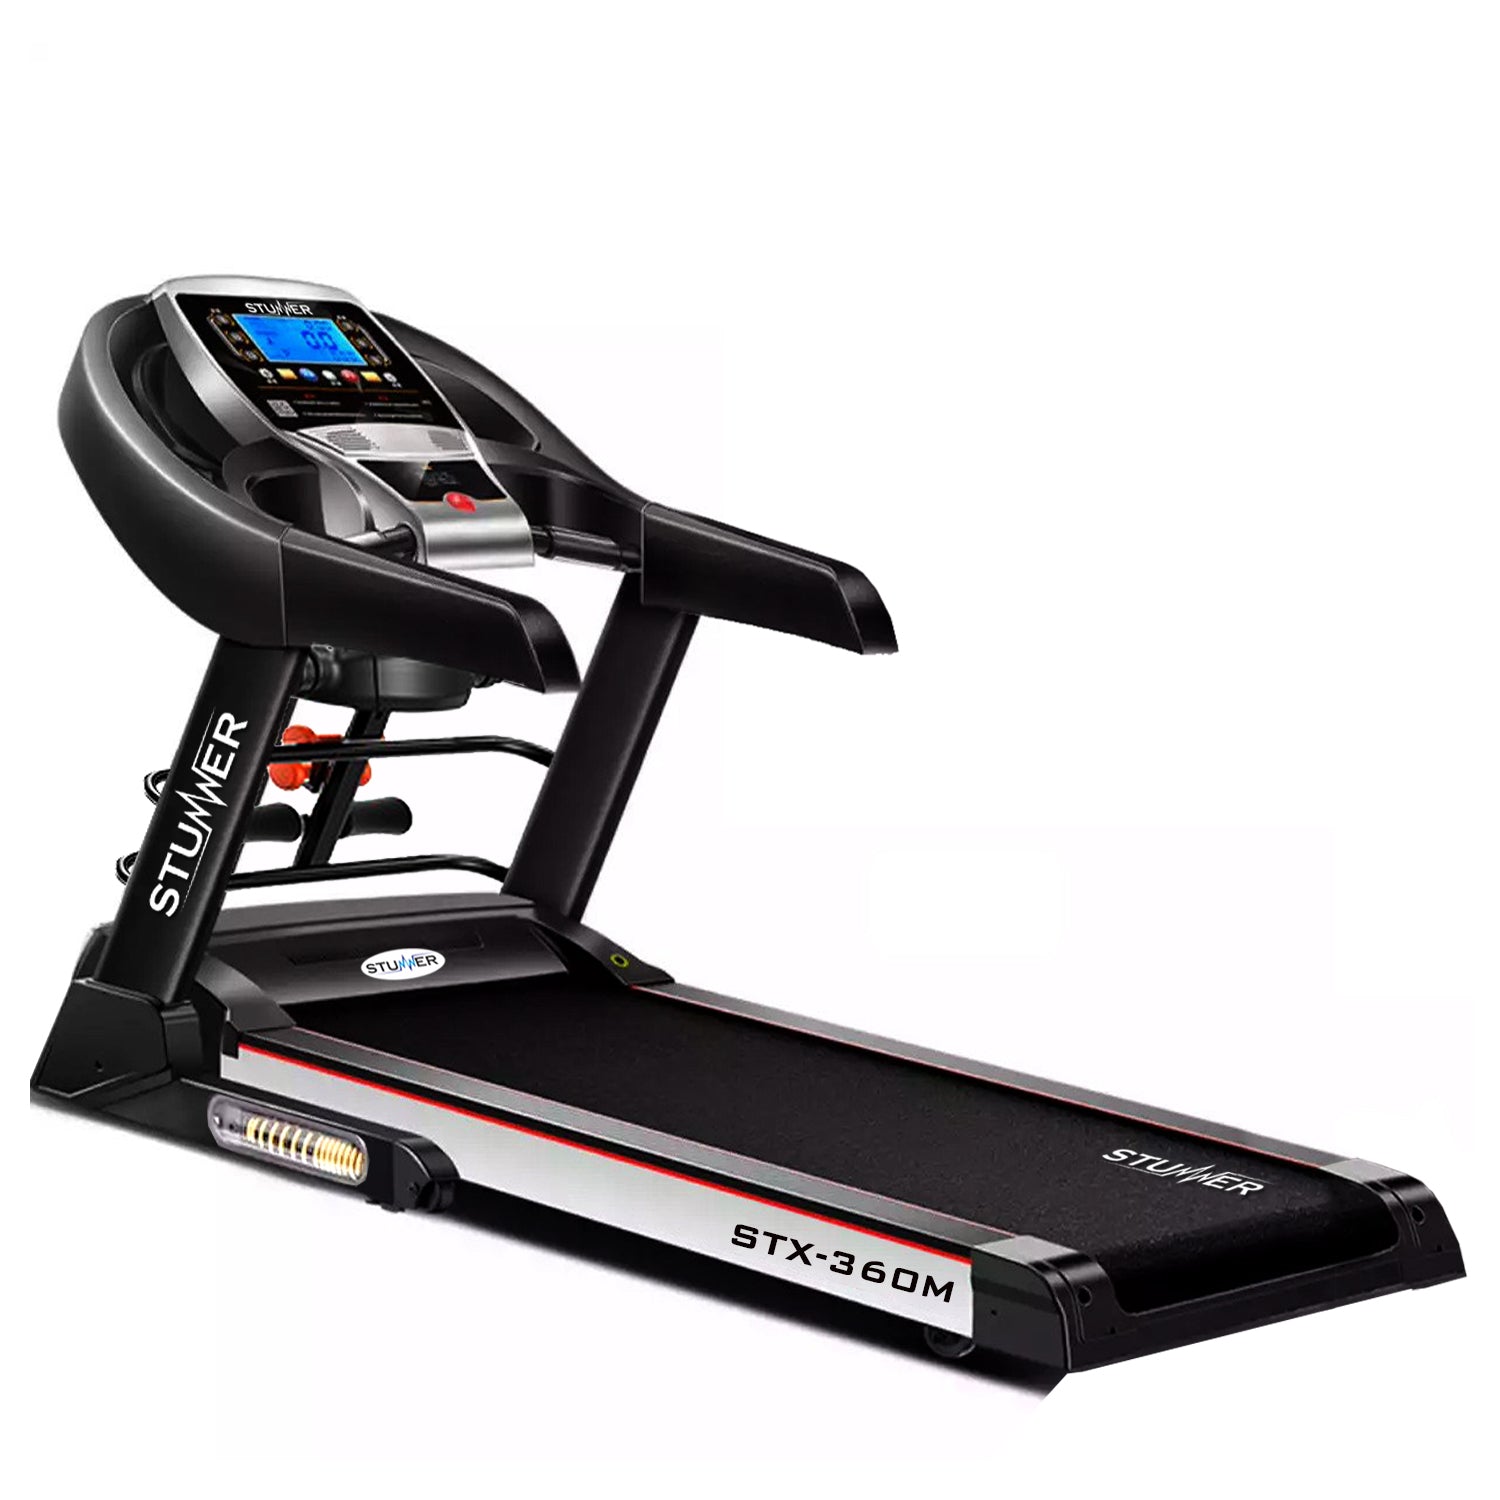 STX-360M Motorized Treadmill